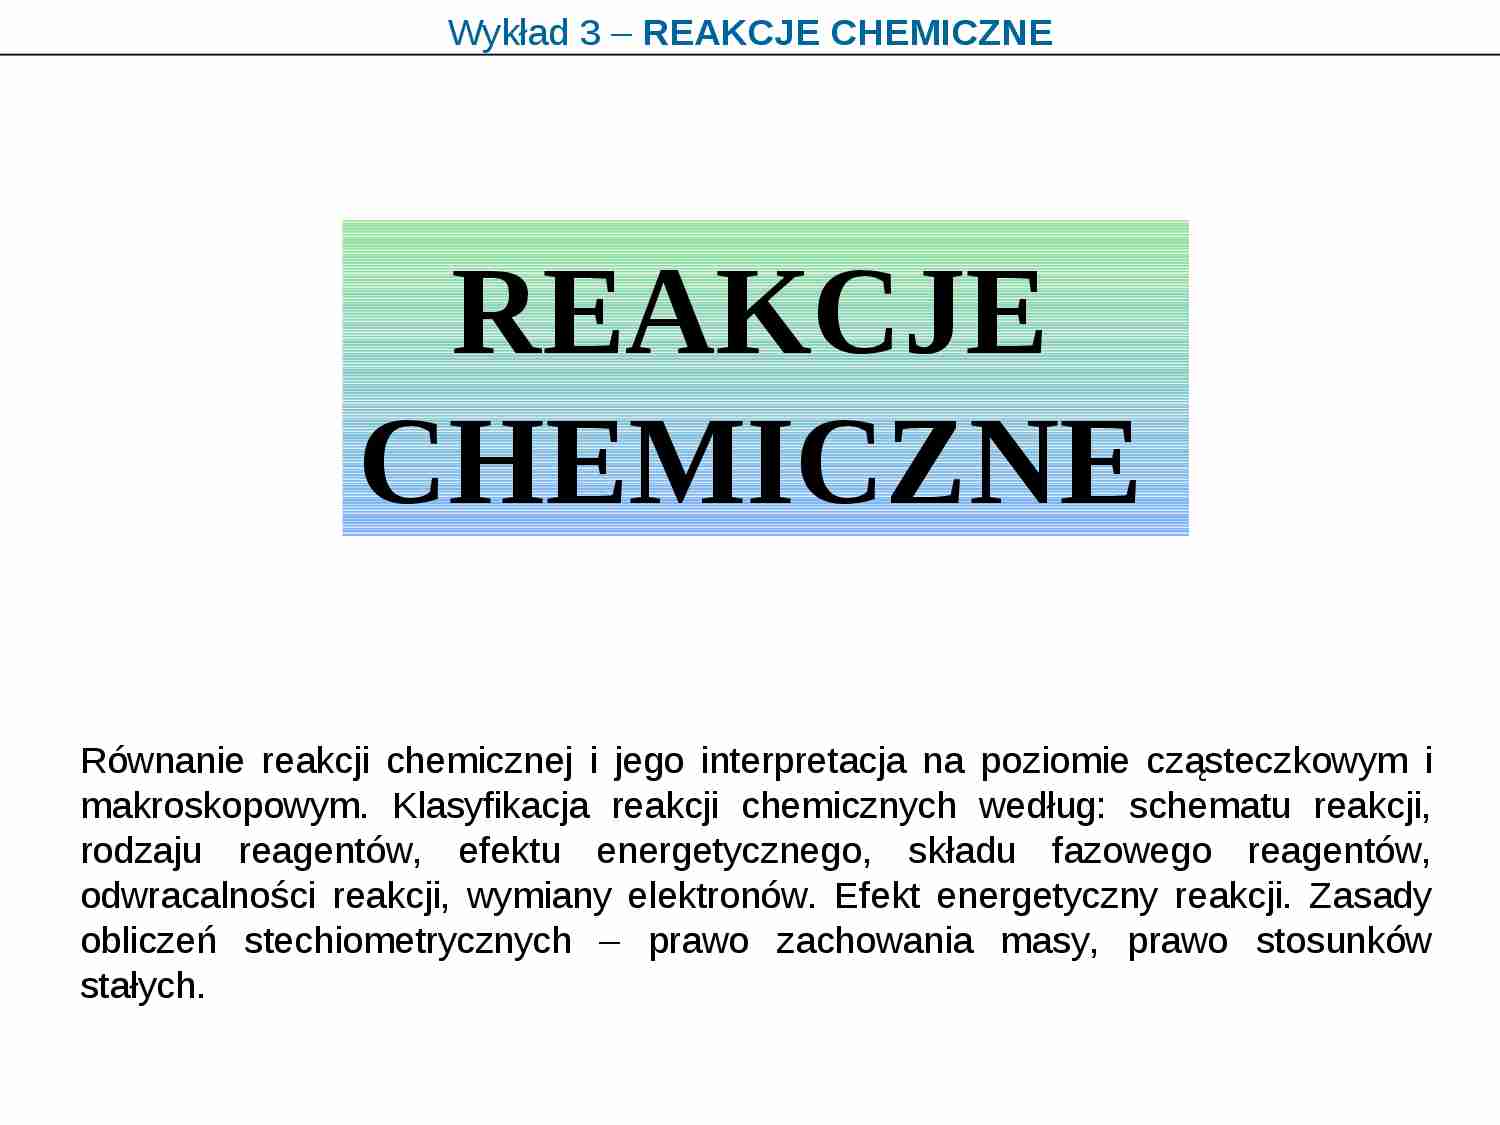 Chemia - reakcje chemiczne - strona 1